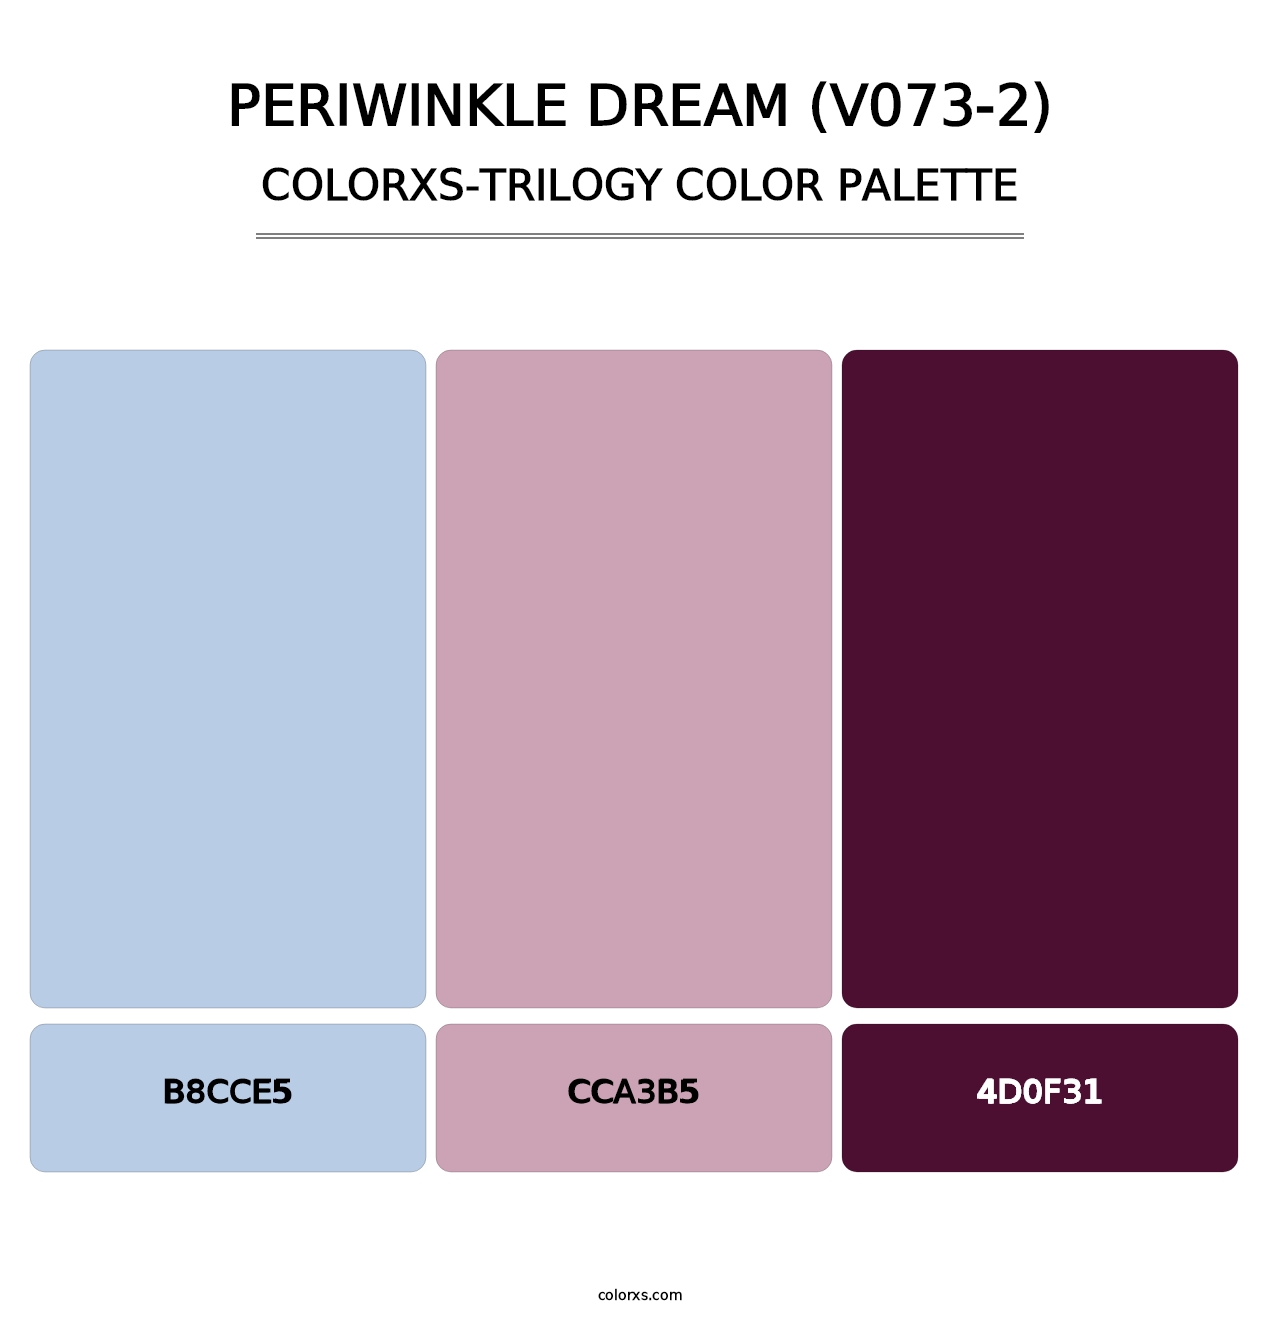 Periwinkle Dream (V073-2) - Colorxs Trilogy Palette